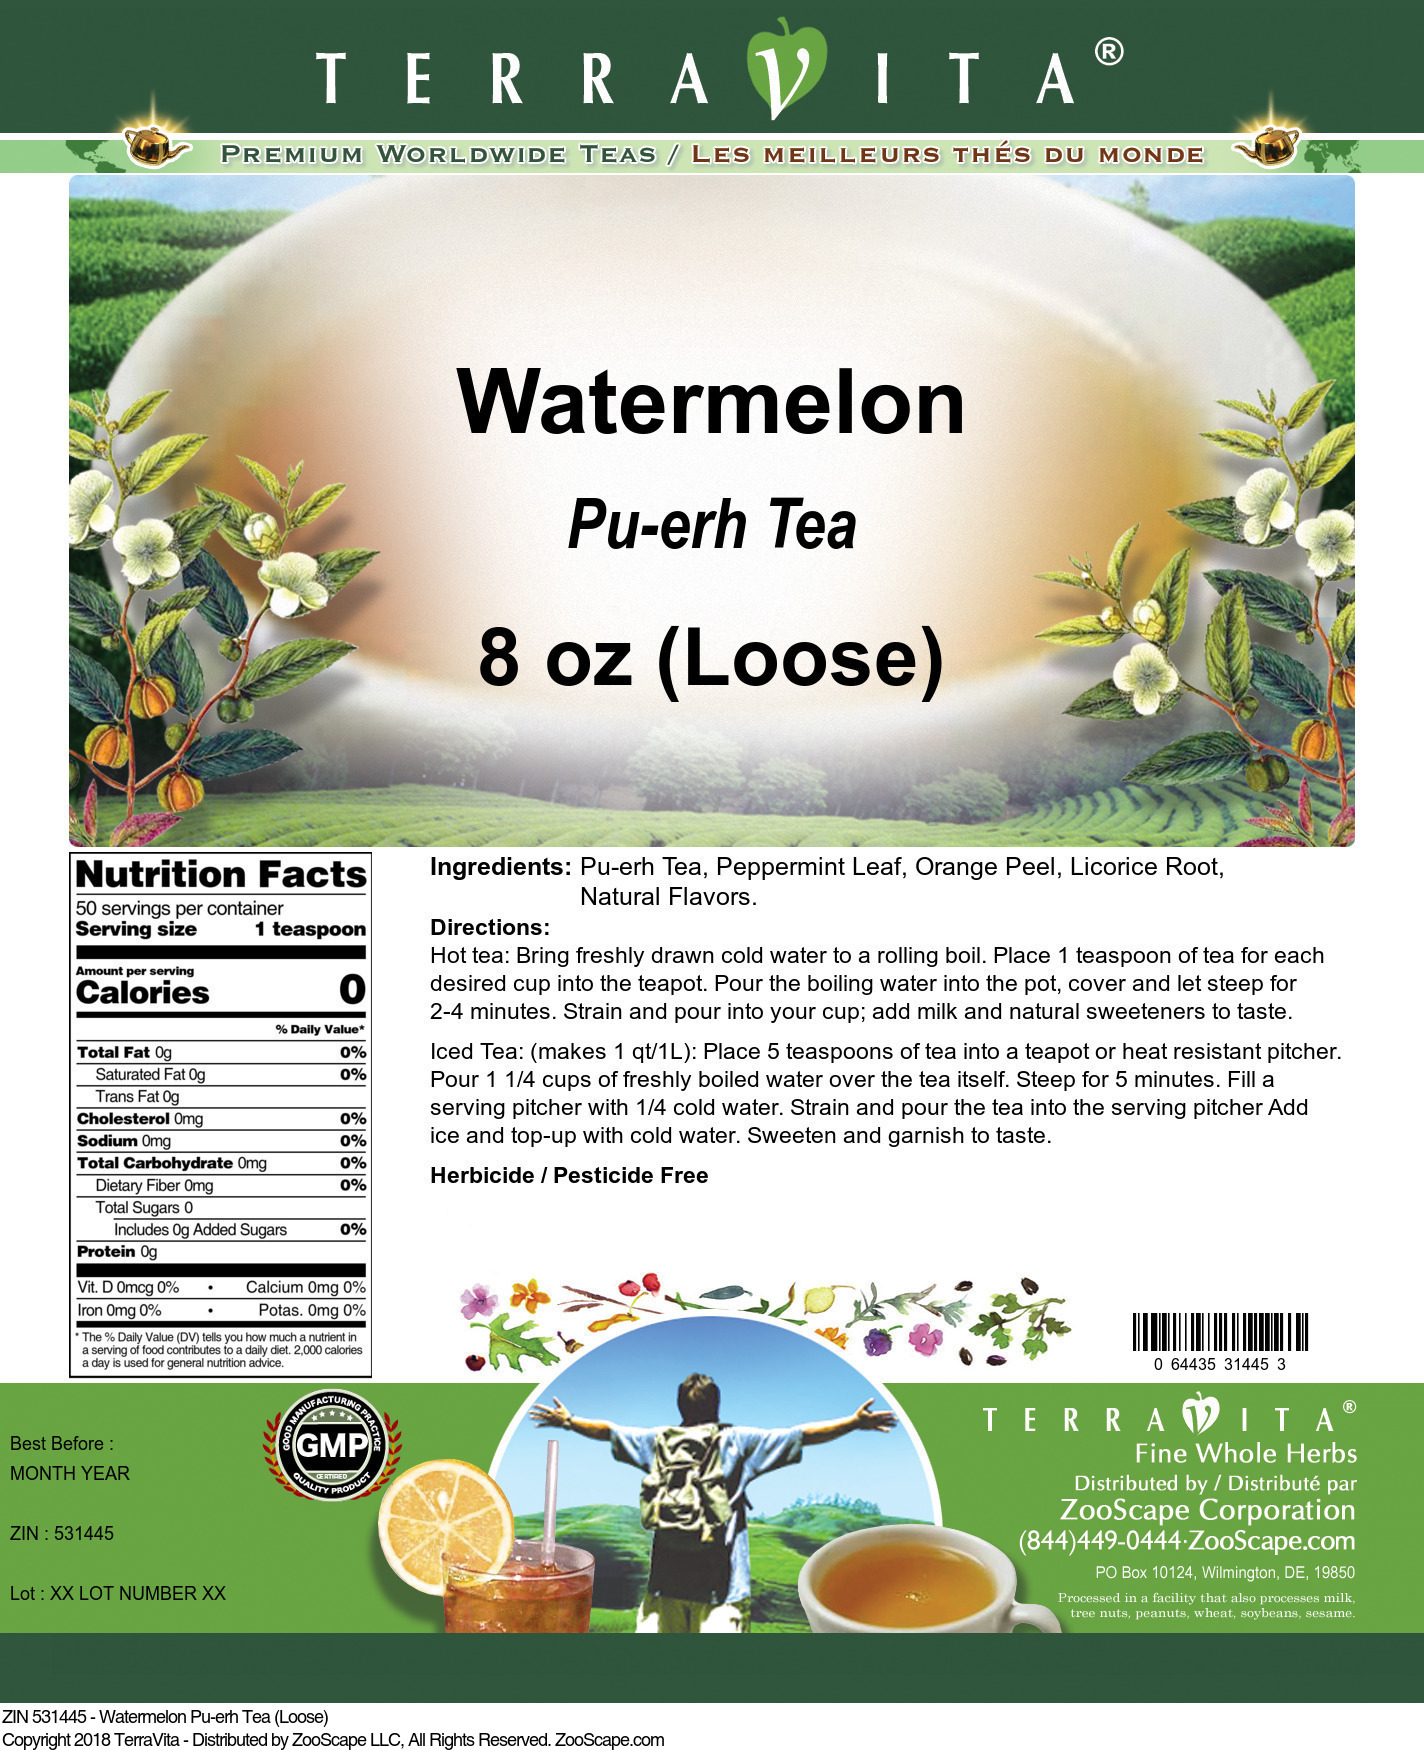 Watermelon Pu-erh Tea (Loose) - Label